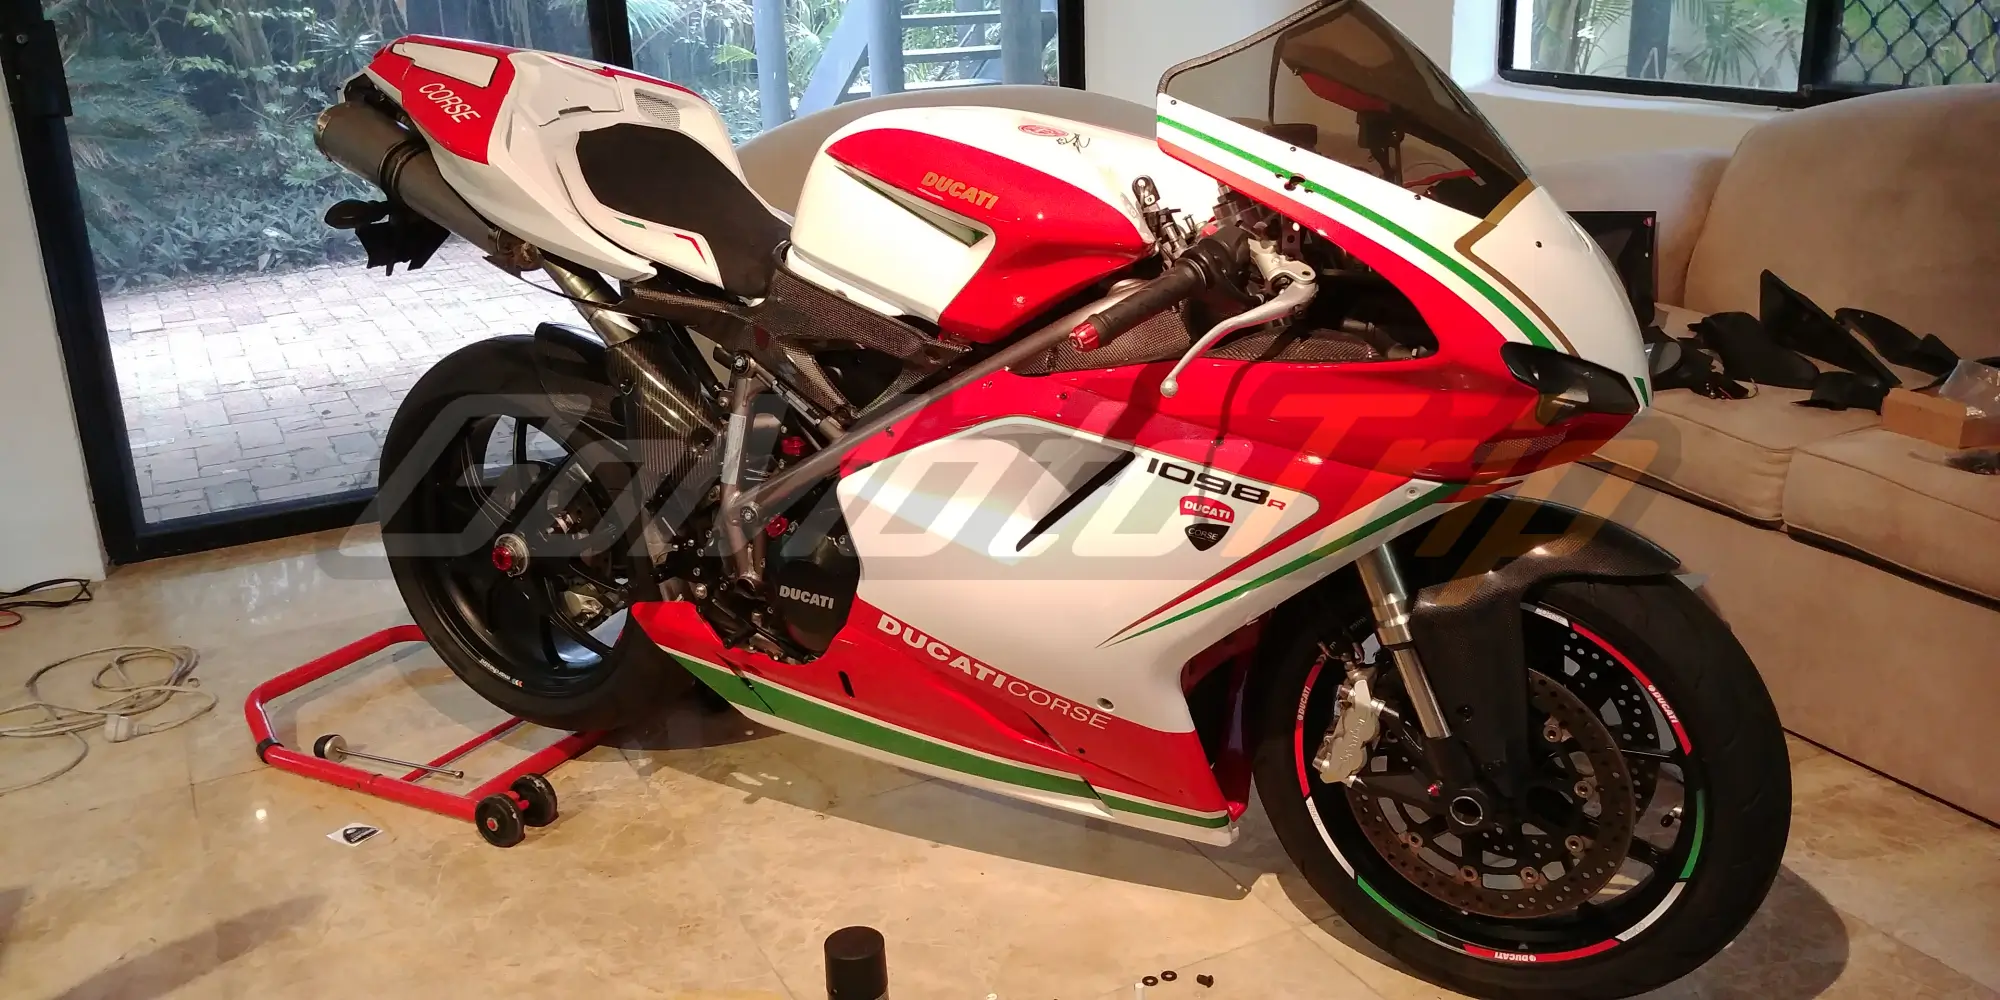 Rider-Review-Karlo-Ducati-1098-R-Corse-Fairing-3